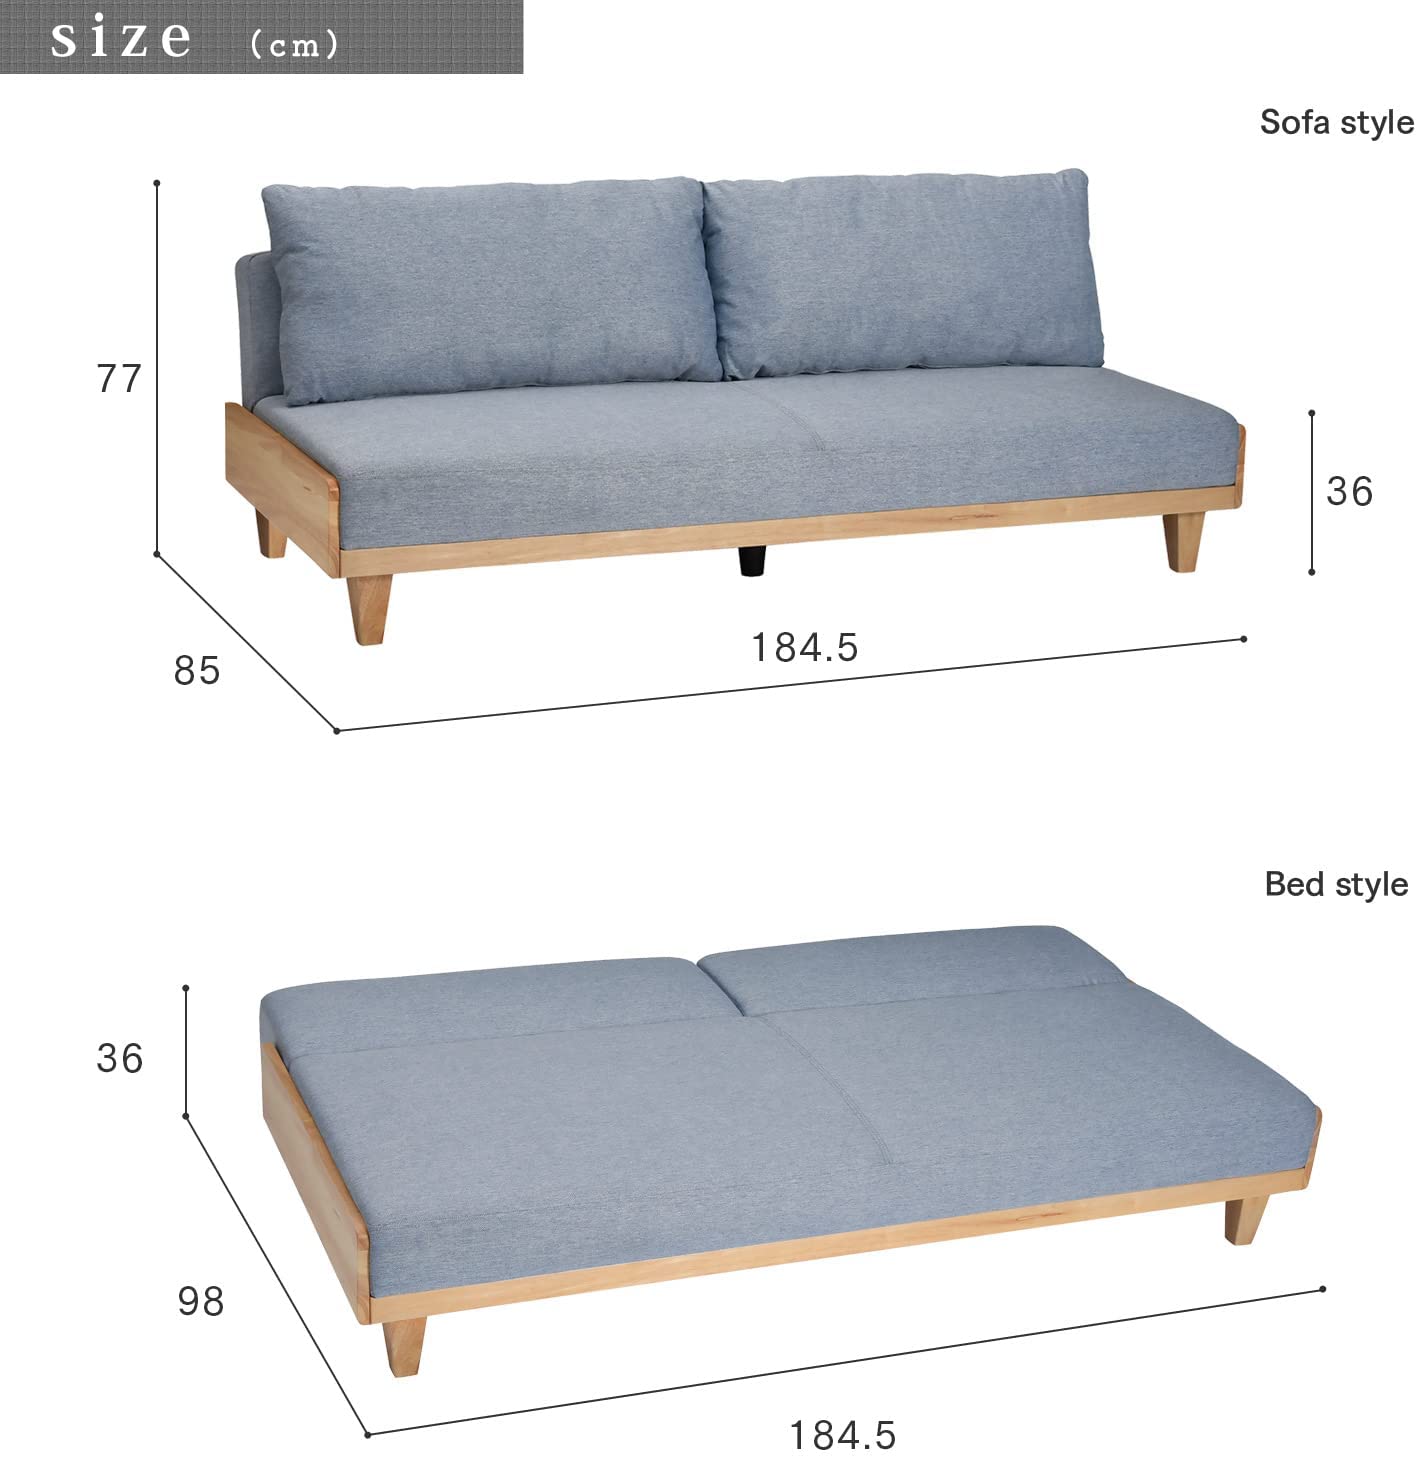 Marche LIMONE Sofa Bed